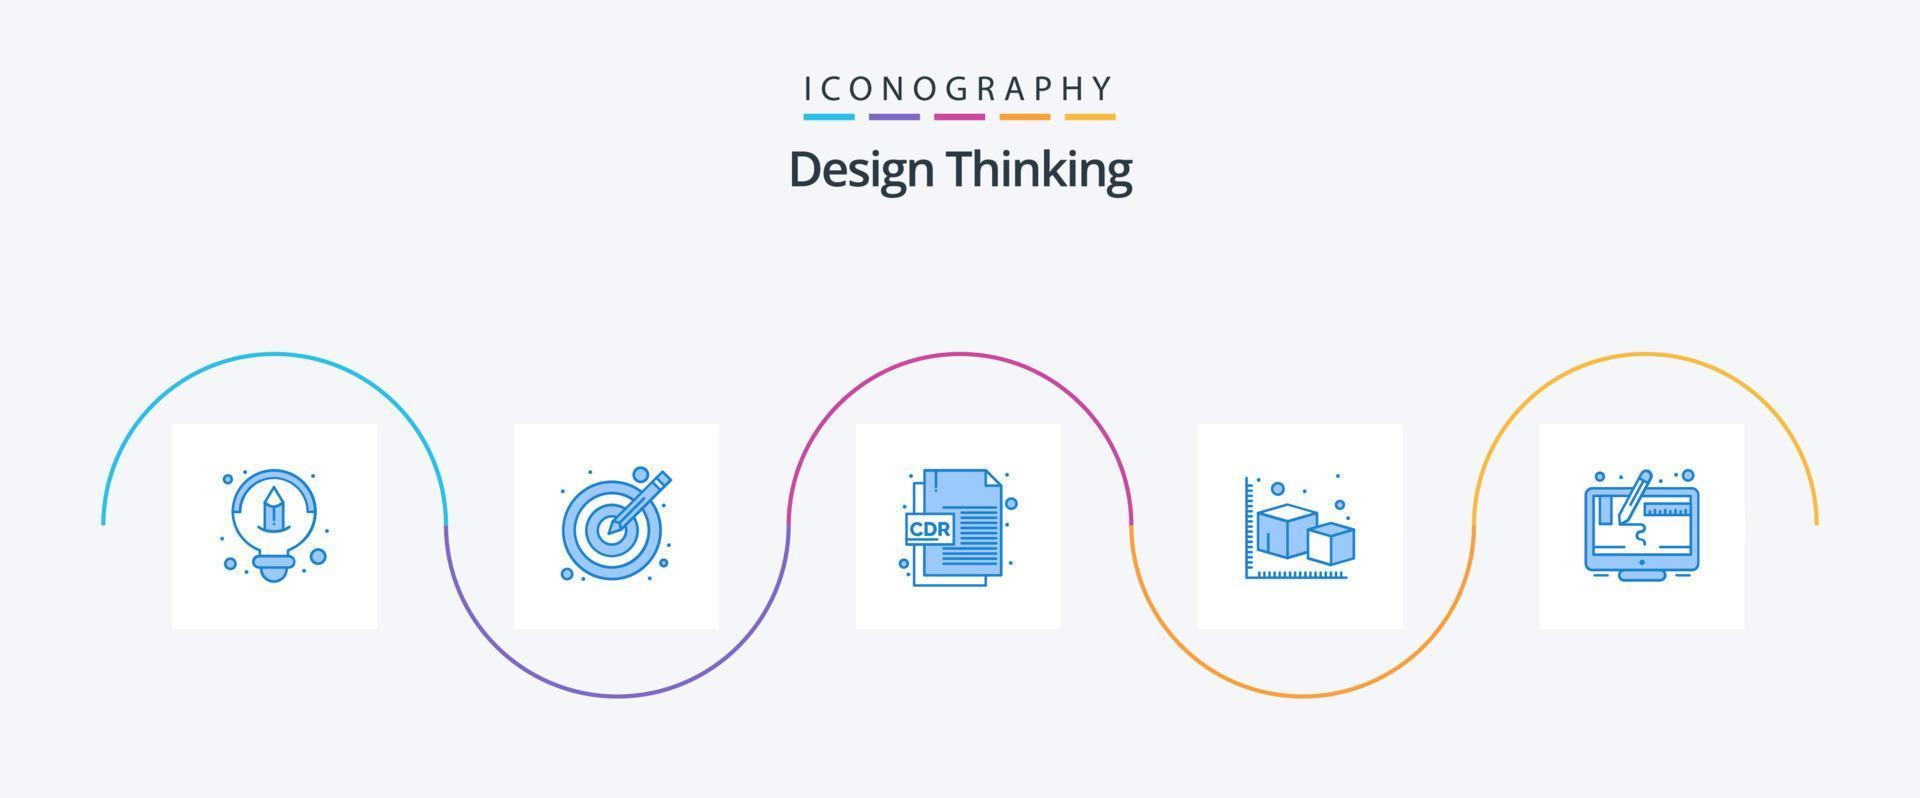 Design Thinking paquete de iconos azul 5 que incluye diseño. objeto. formato cdr. modelado. flecha vector